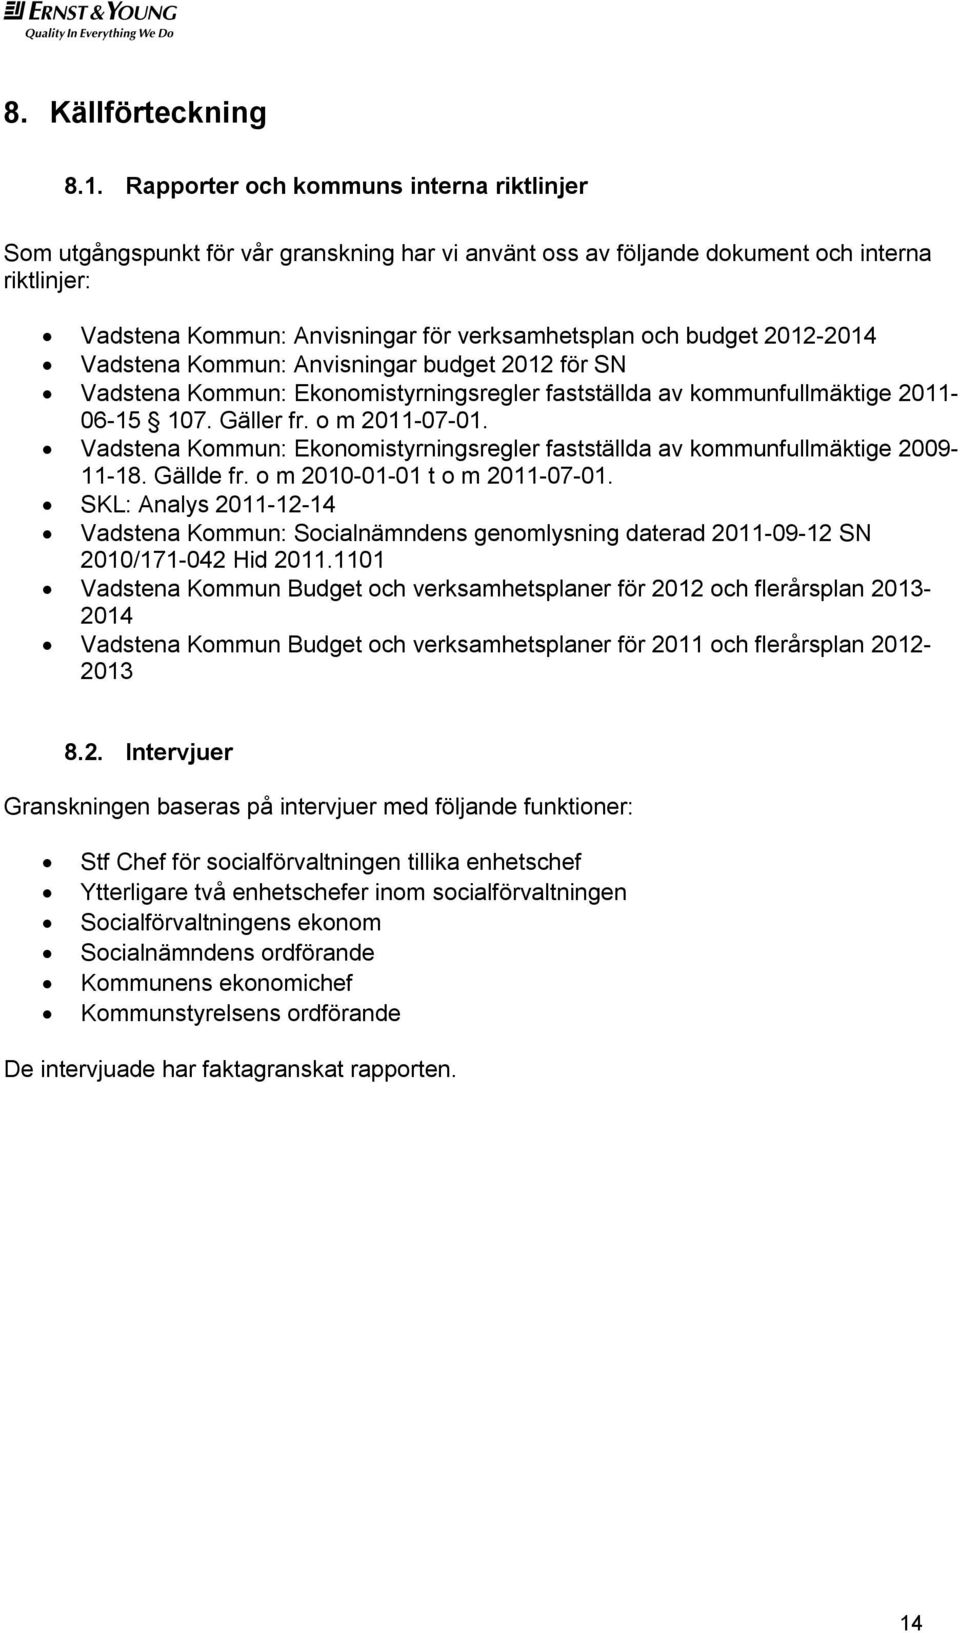 2012-2014 Vadstena Kommun: Anvisningar budget 2012 för SN Vadstena Kommun: Ekonomistyrningsregler fastställda av kommunfullmäktige 2011-06-15 107. Gäller fr. o m 2011-07-01.